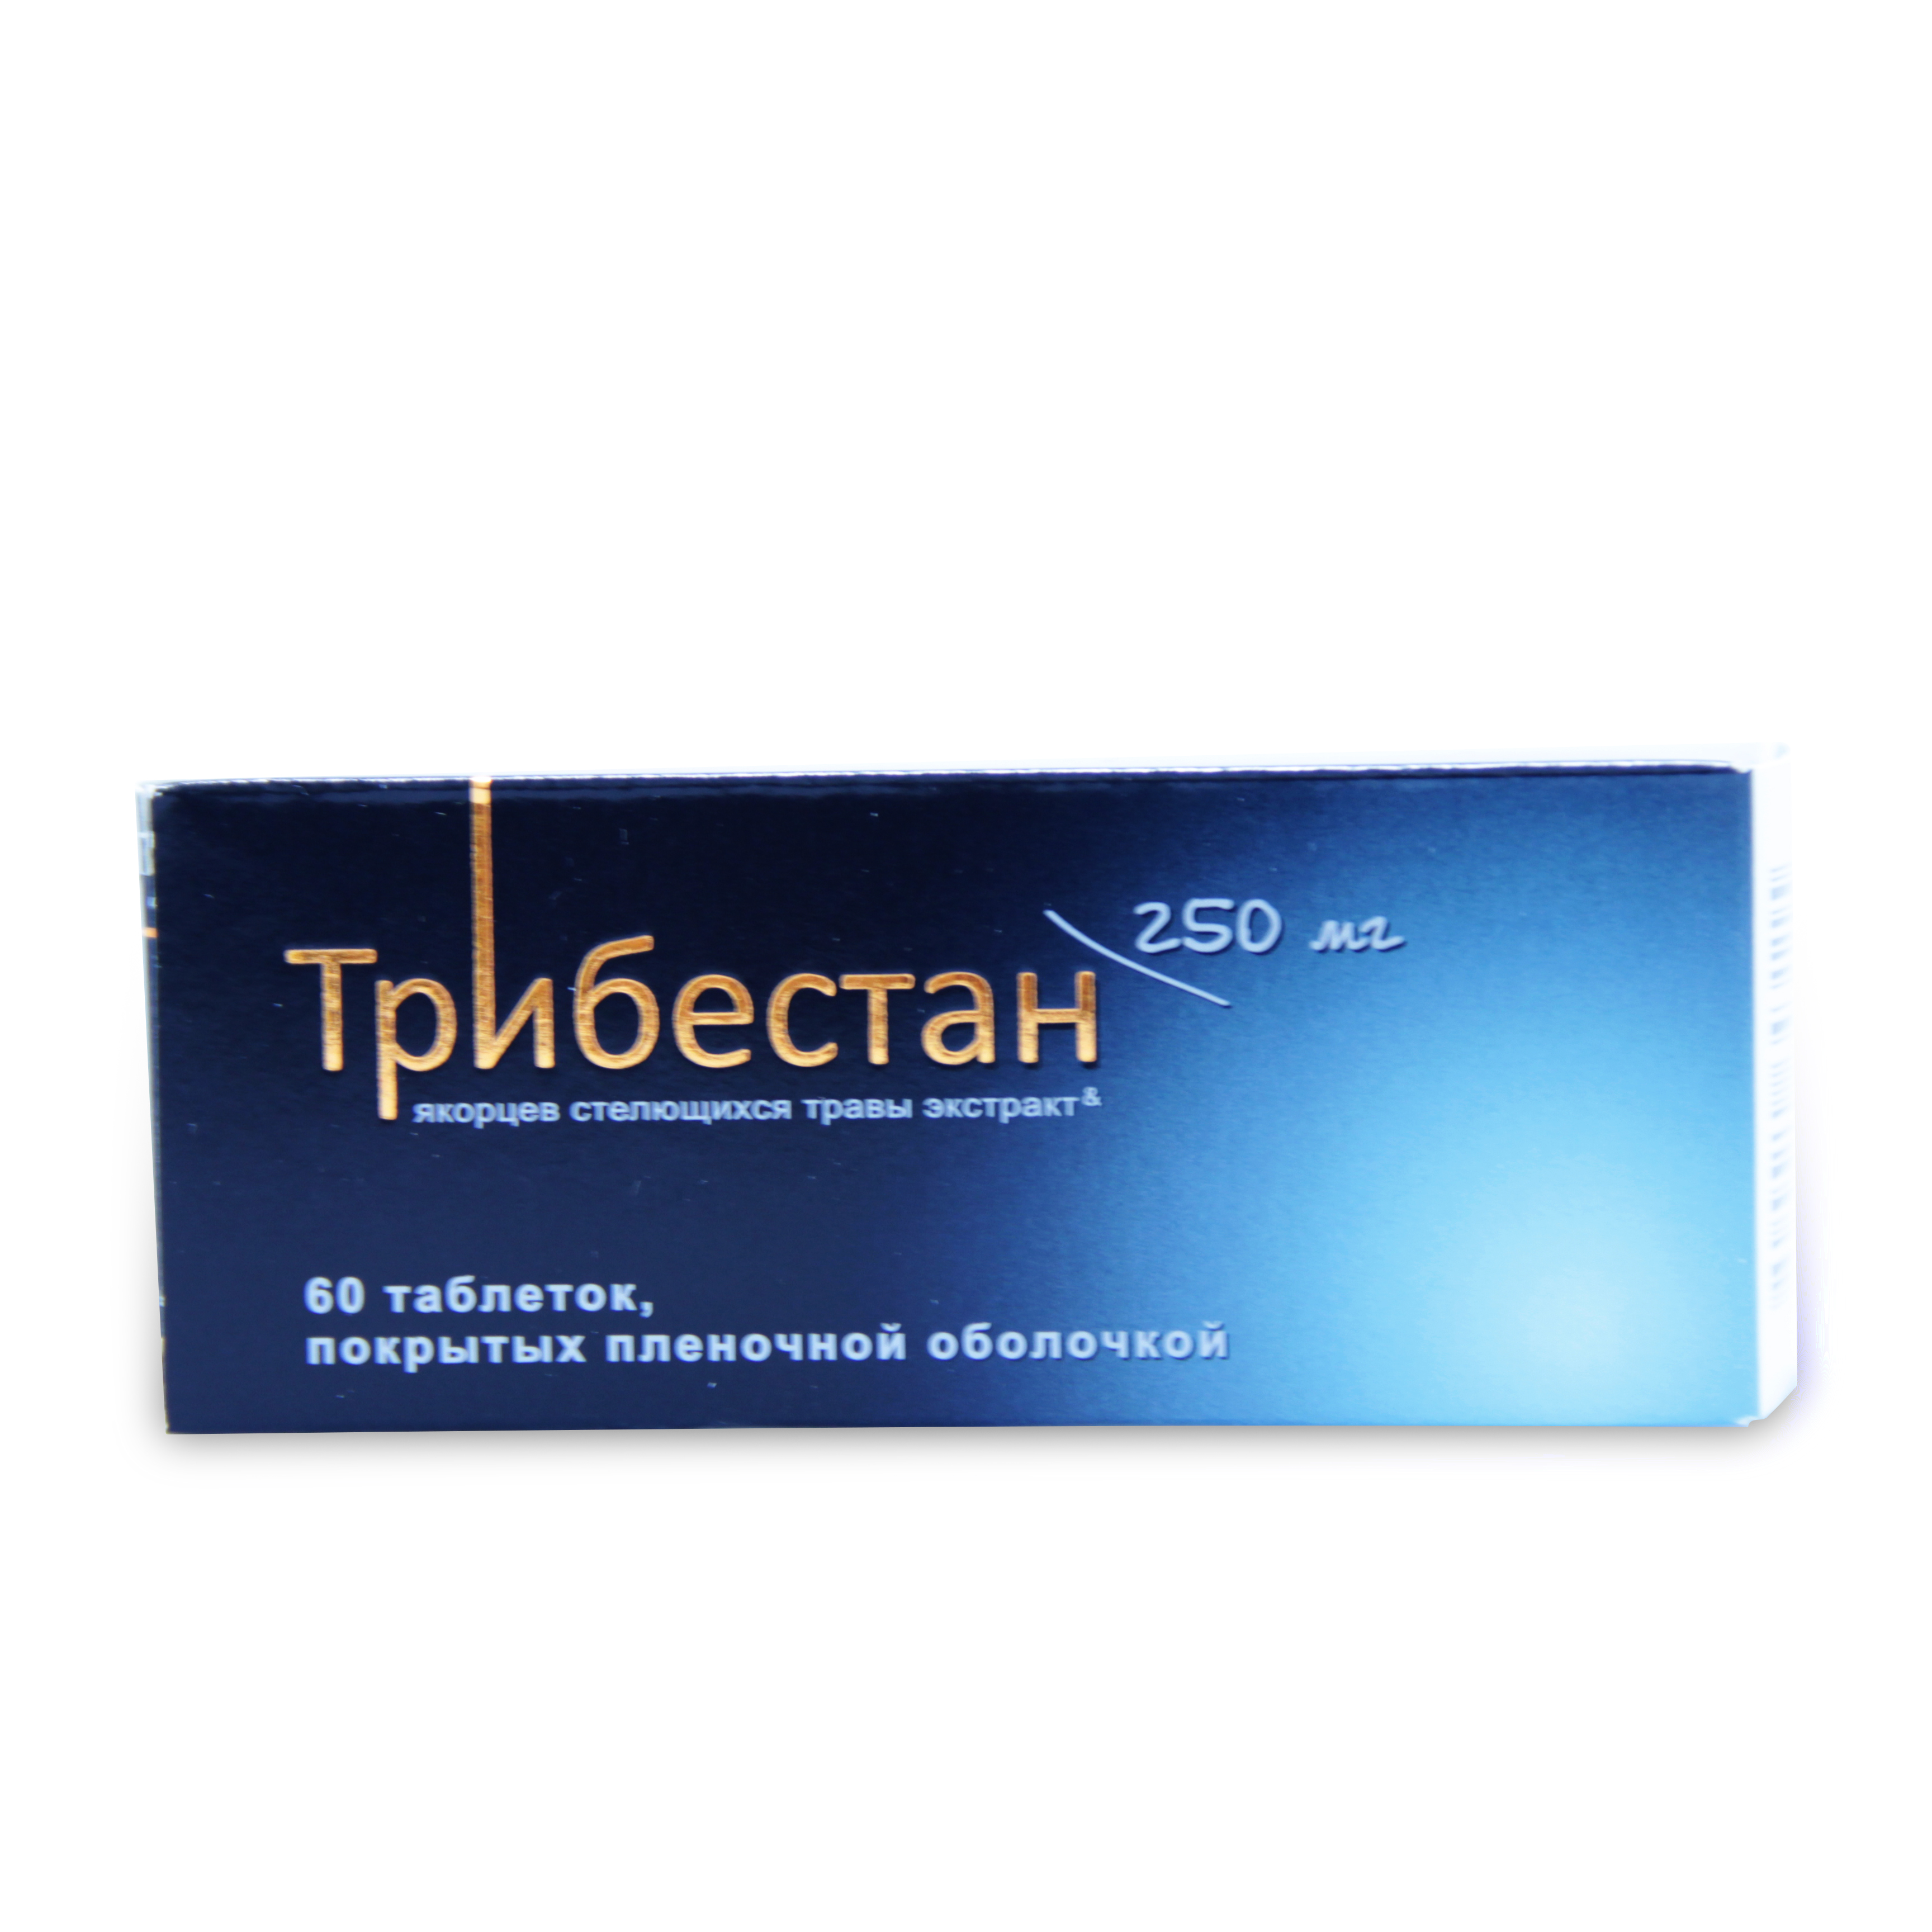 Купить Трибестан таблетки покрытые пленочной оболочкой 250 мг 60 шт., Sopharma [Софарма]